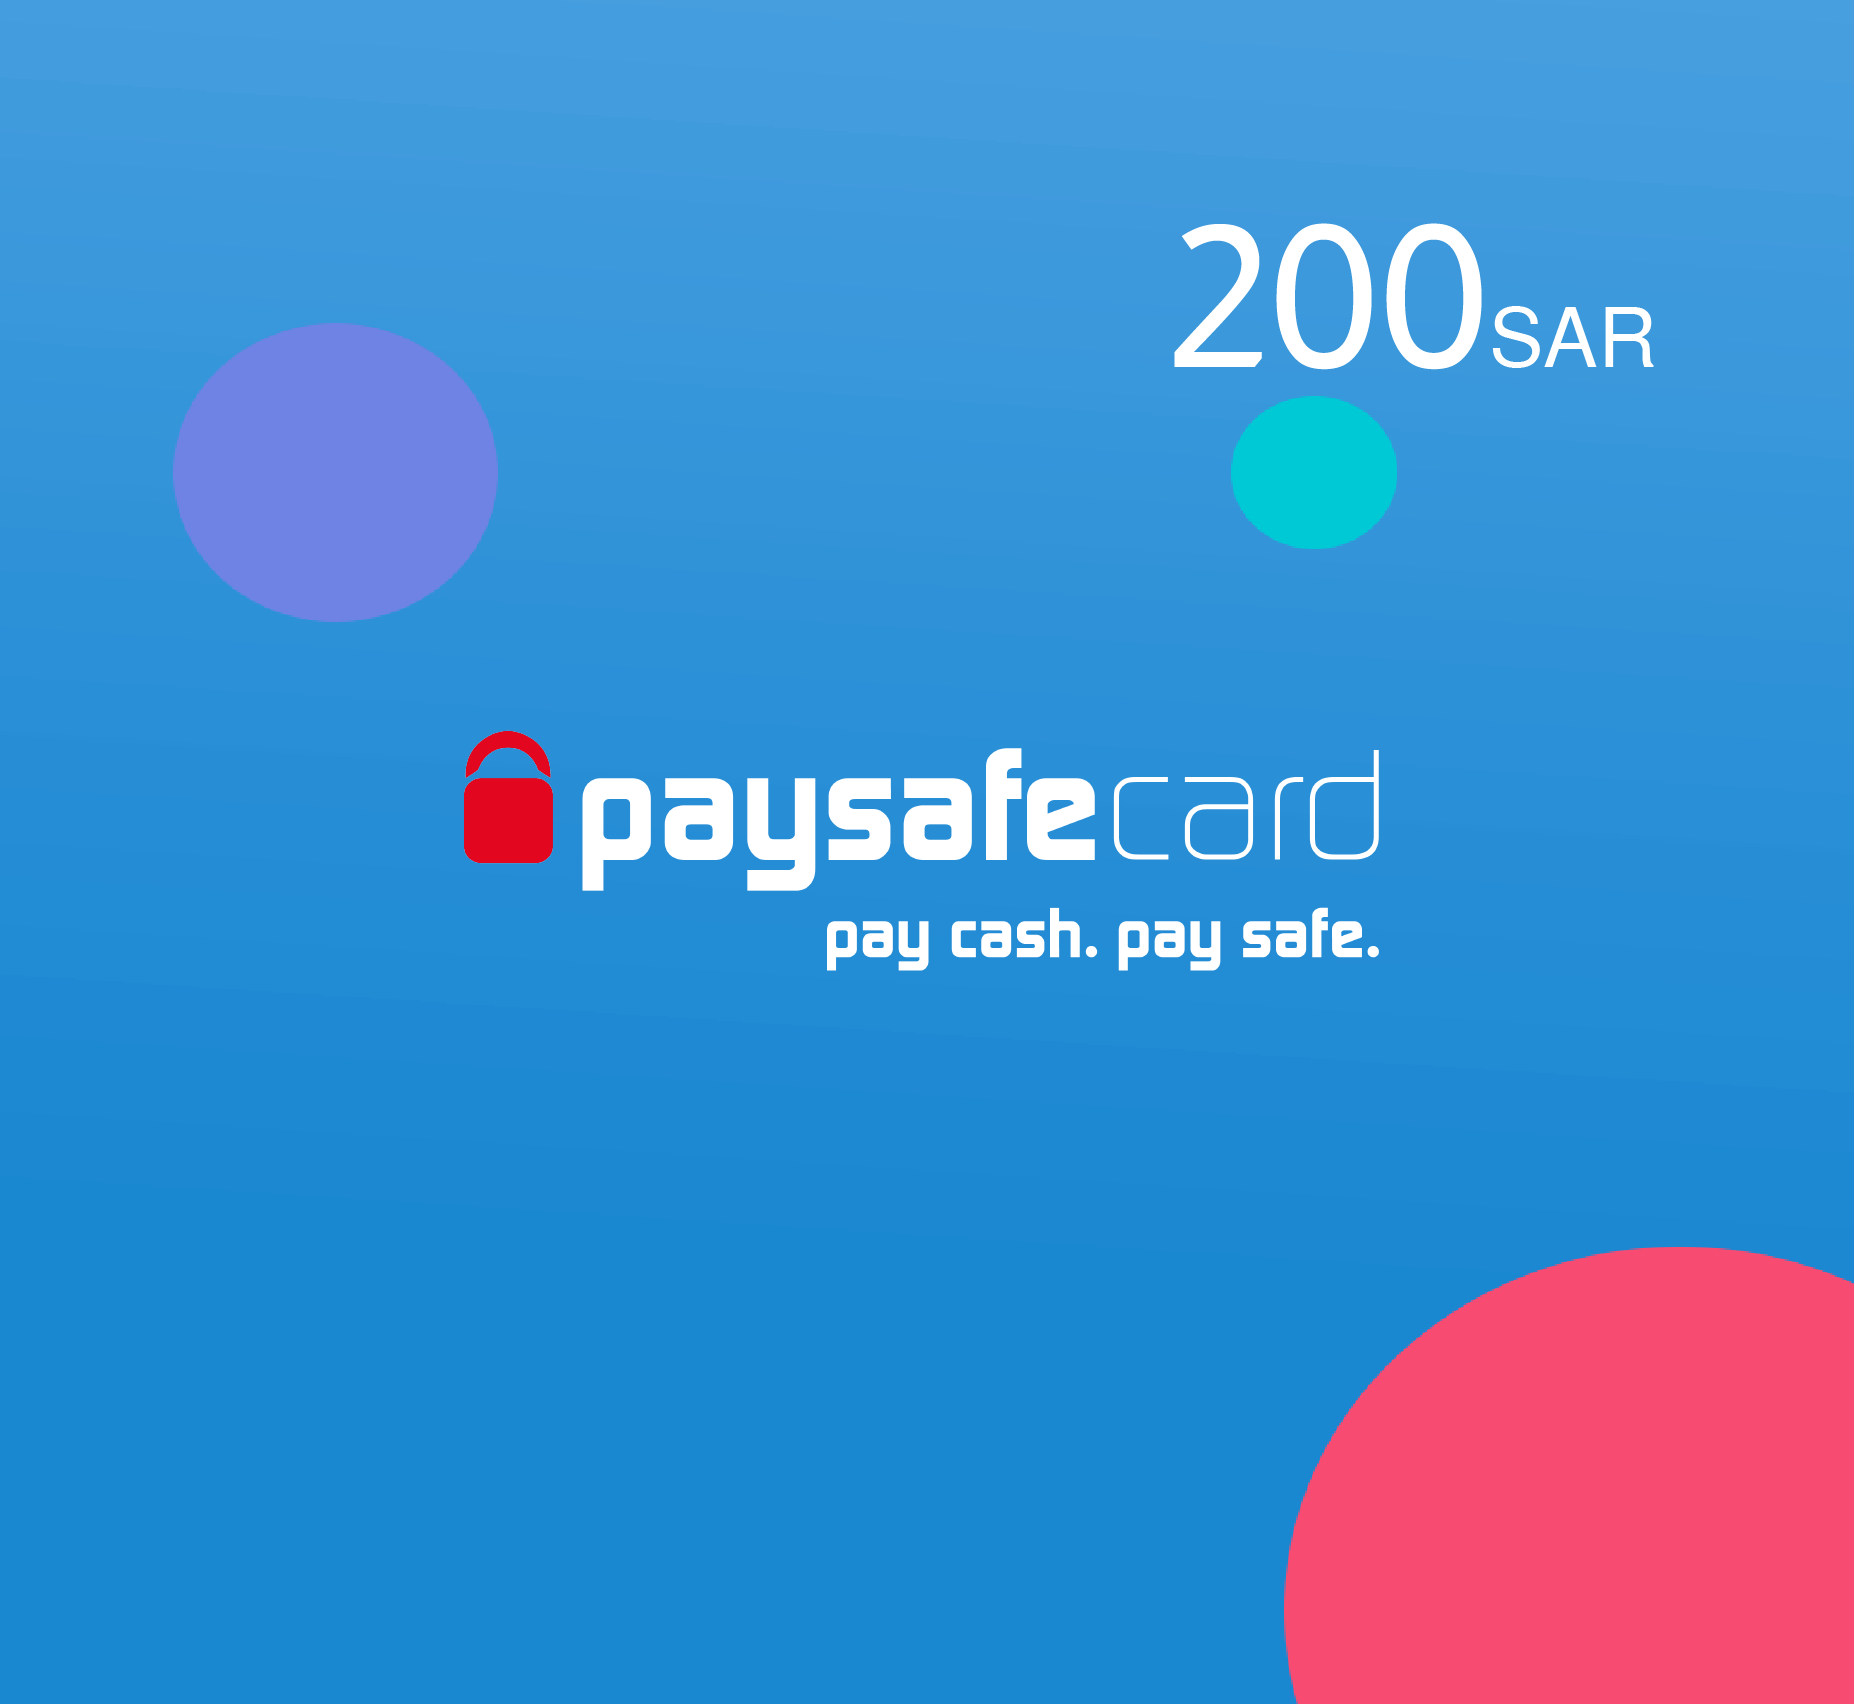 Paysafe card 200 SAR